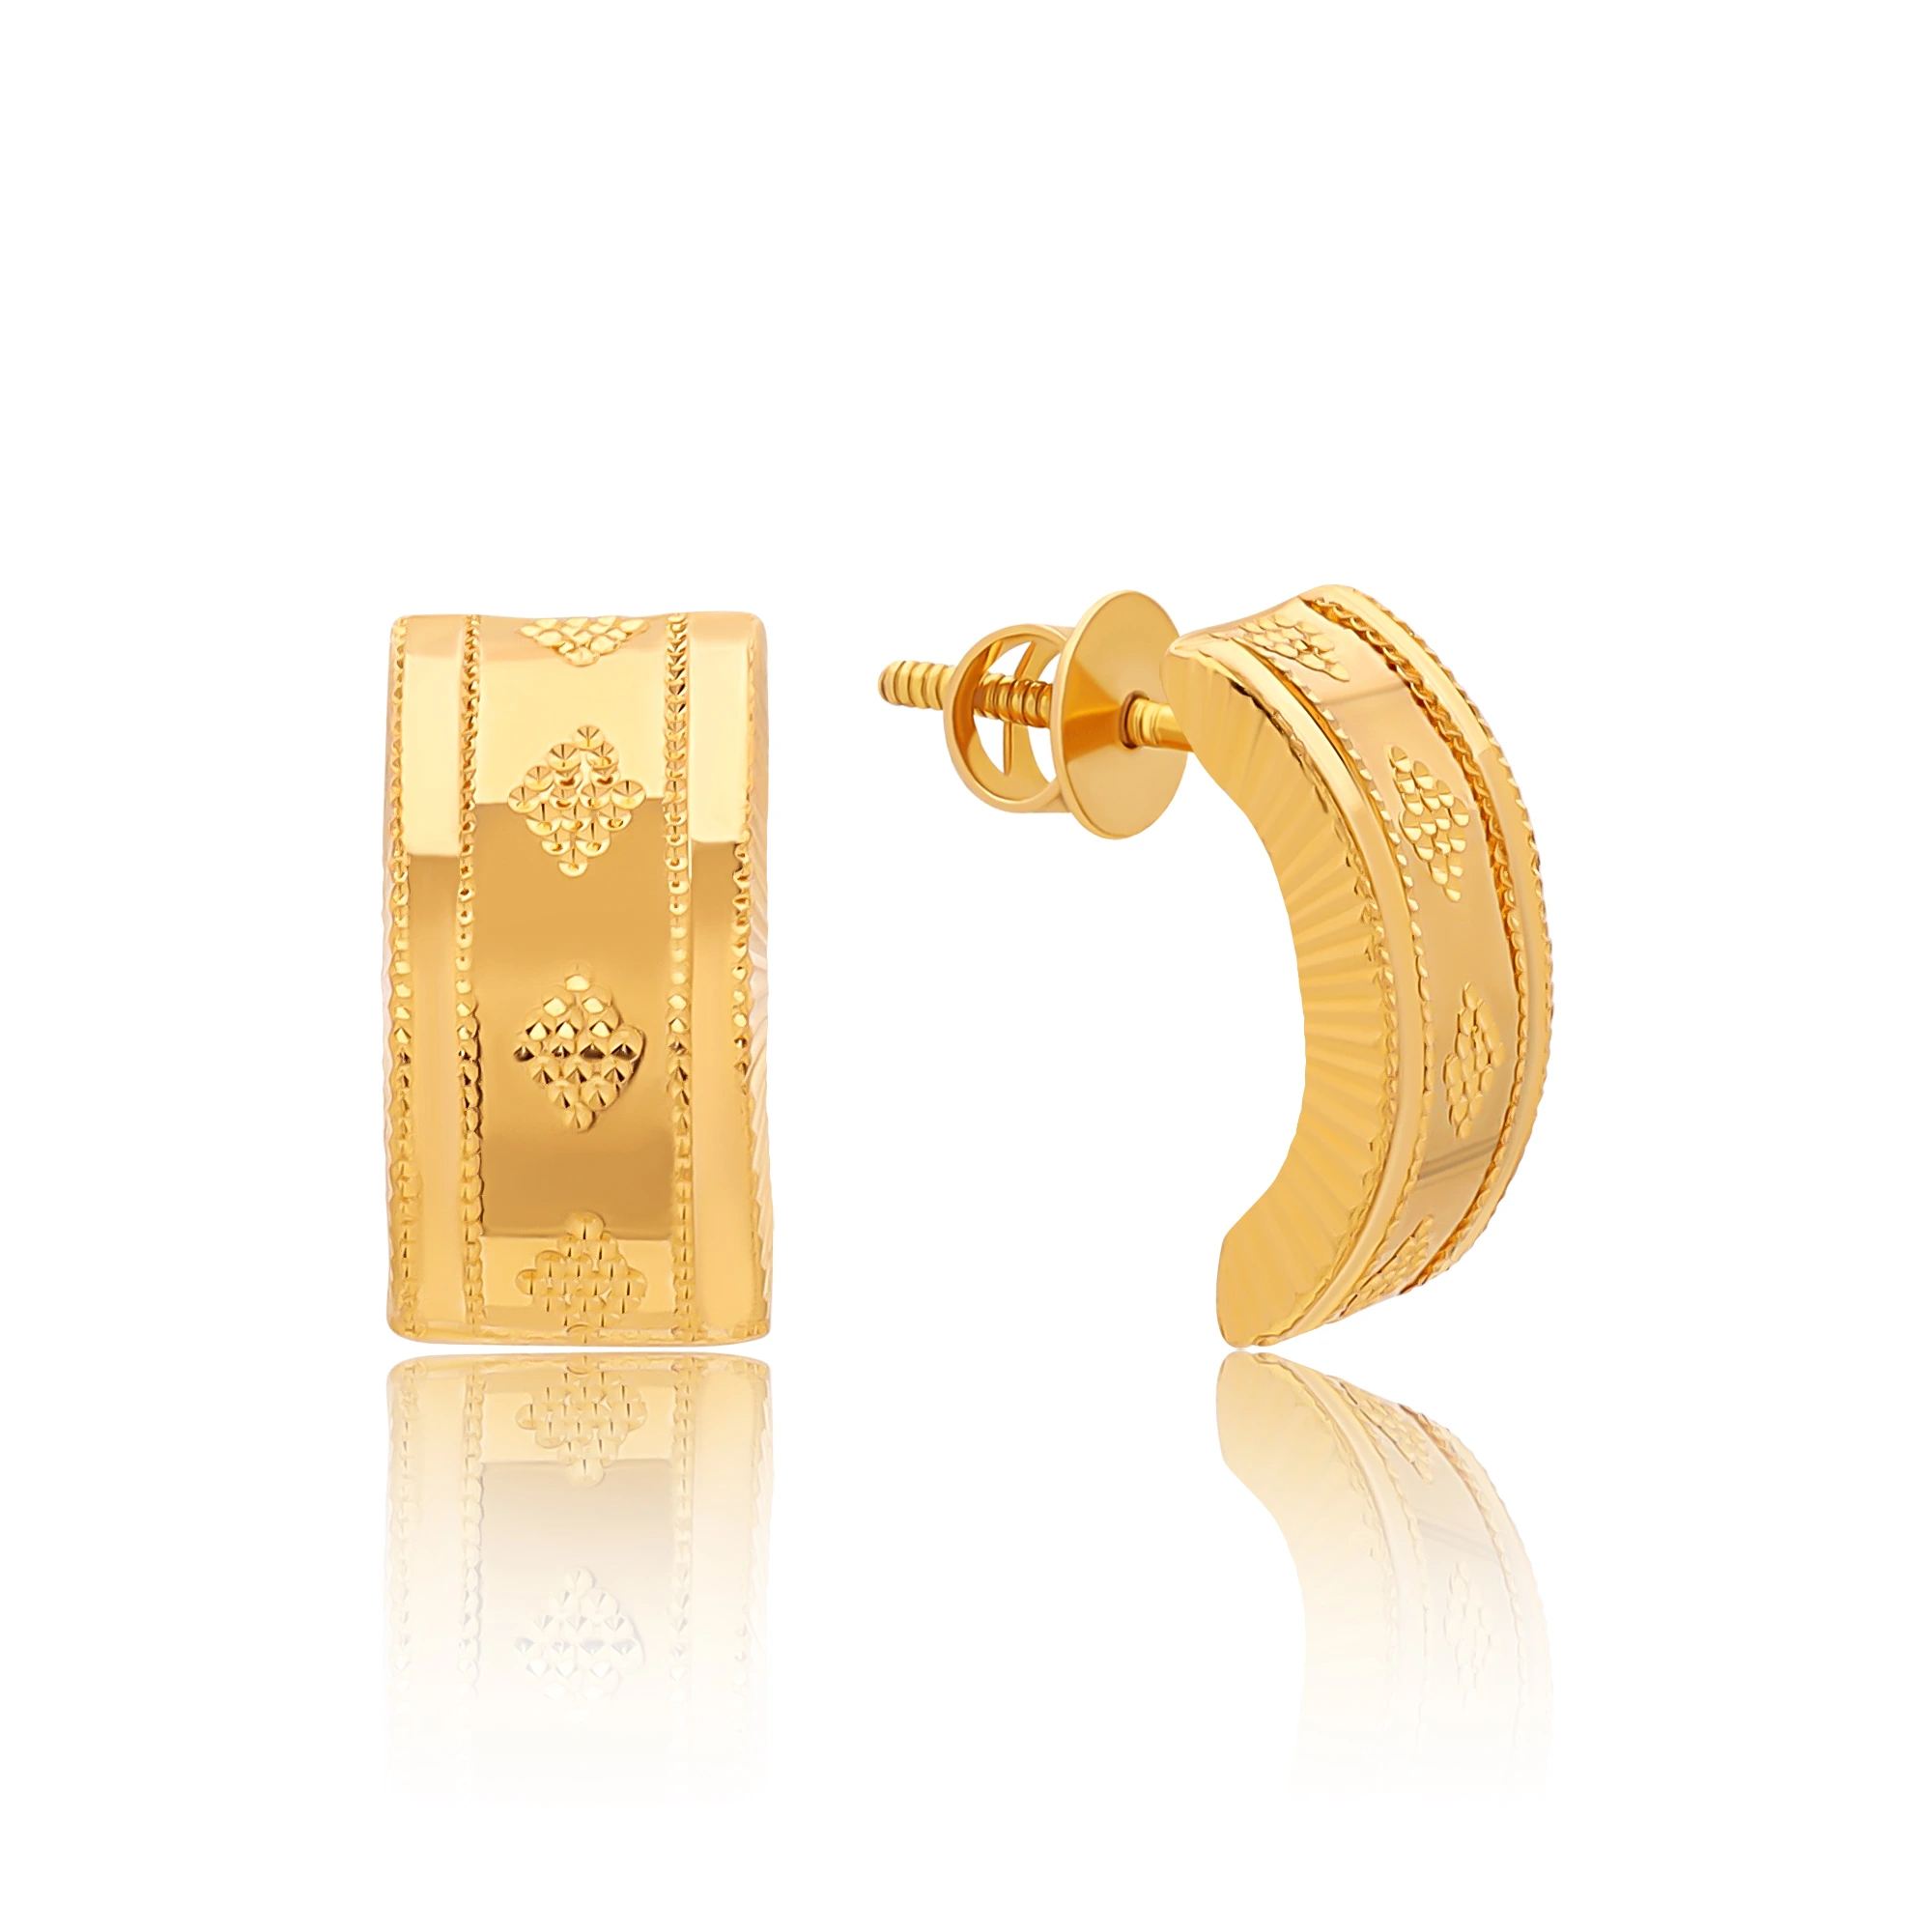 Latest long gold earrings design || 22 k gold earrings design - YouTube